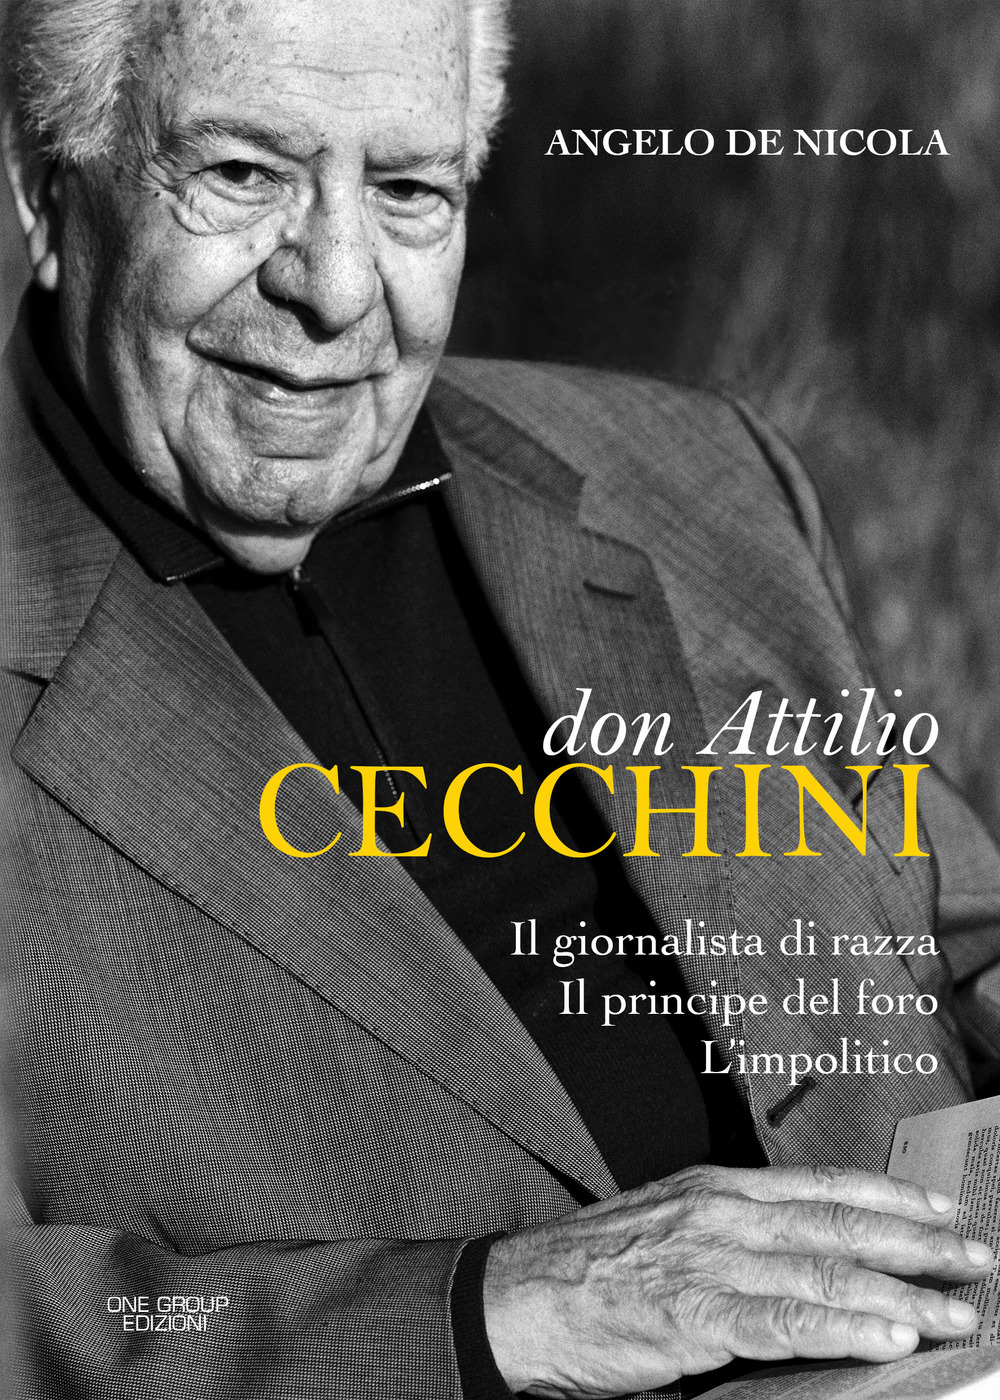 Don Attilio Cecchini. Il giornalista di razza, il principe del foro, l'impolitico